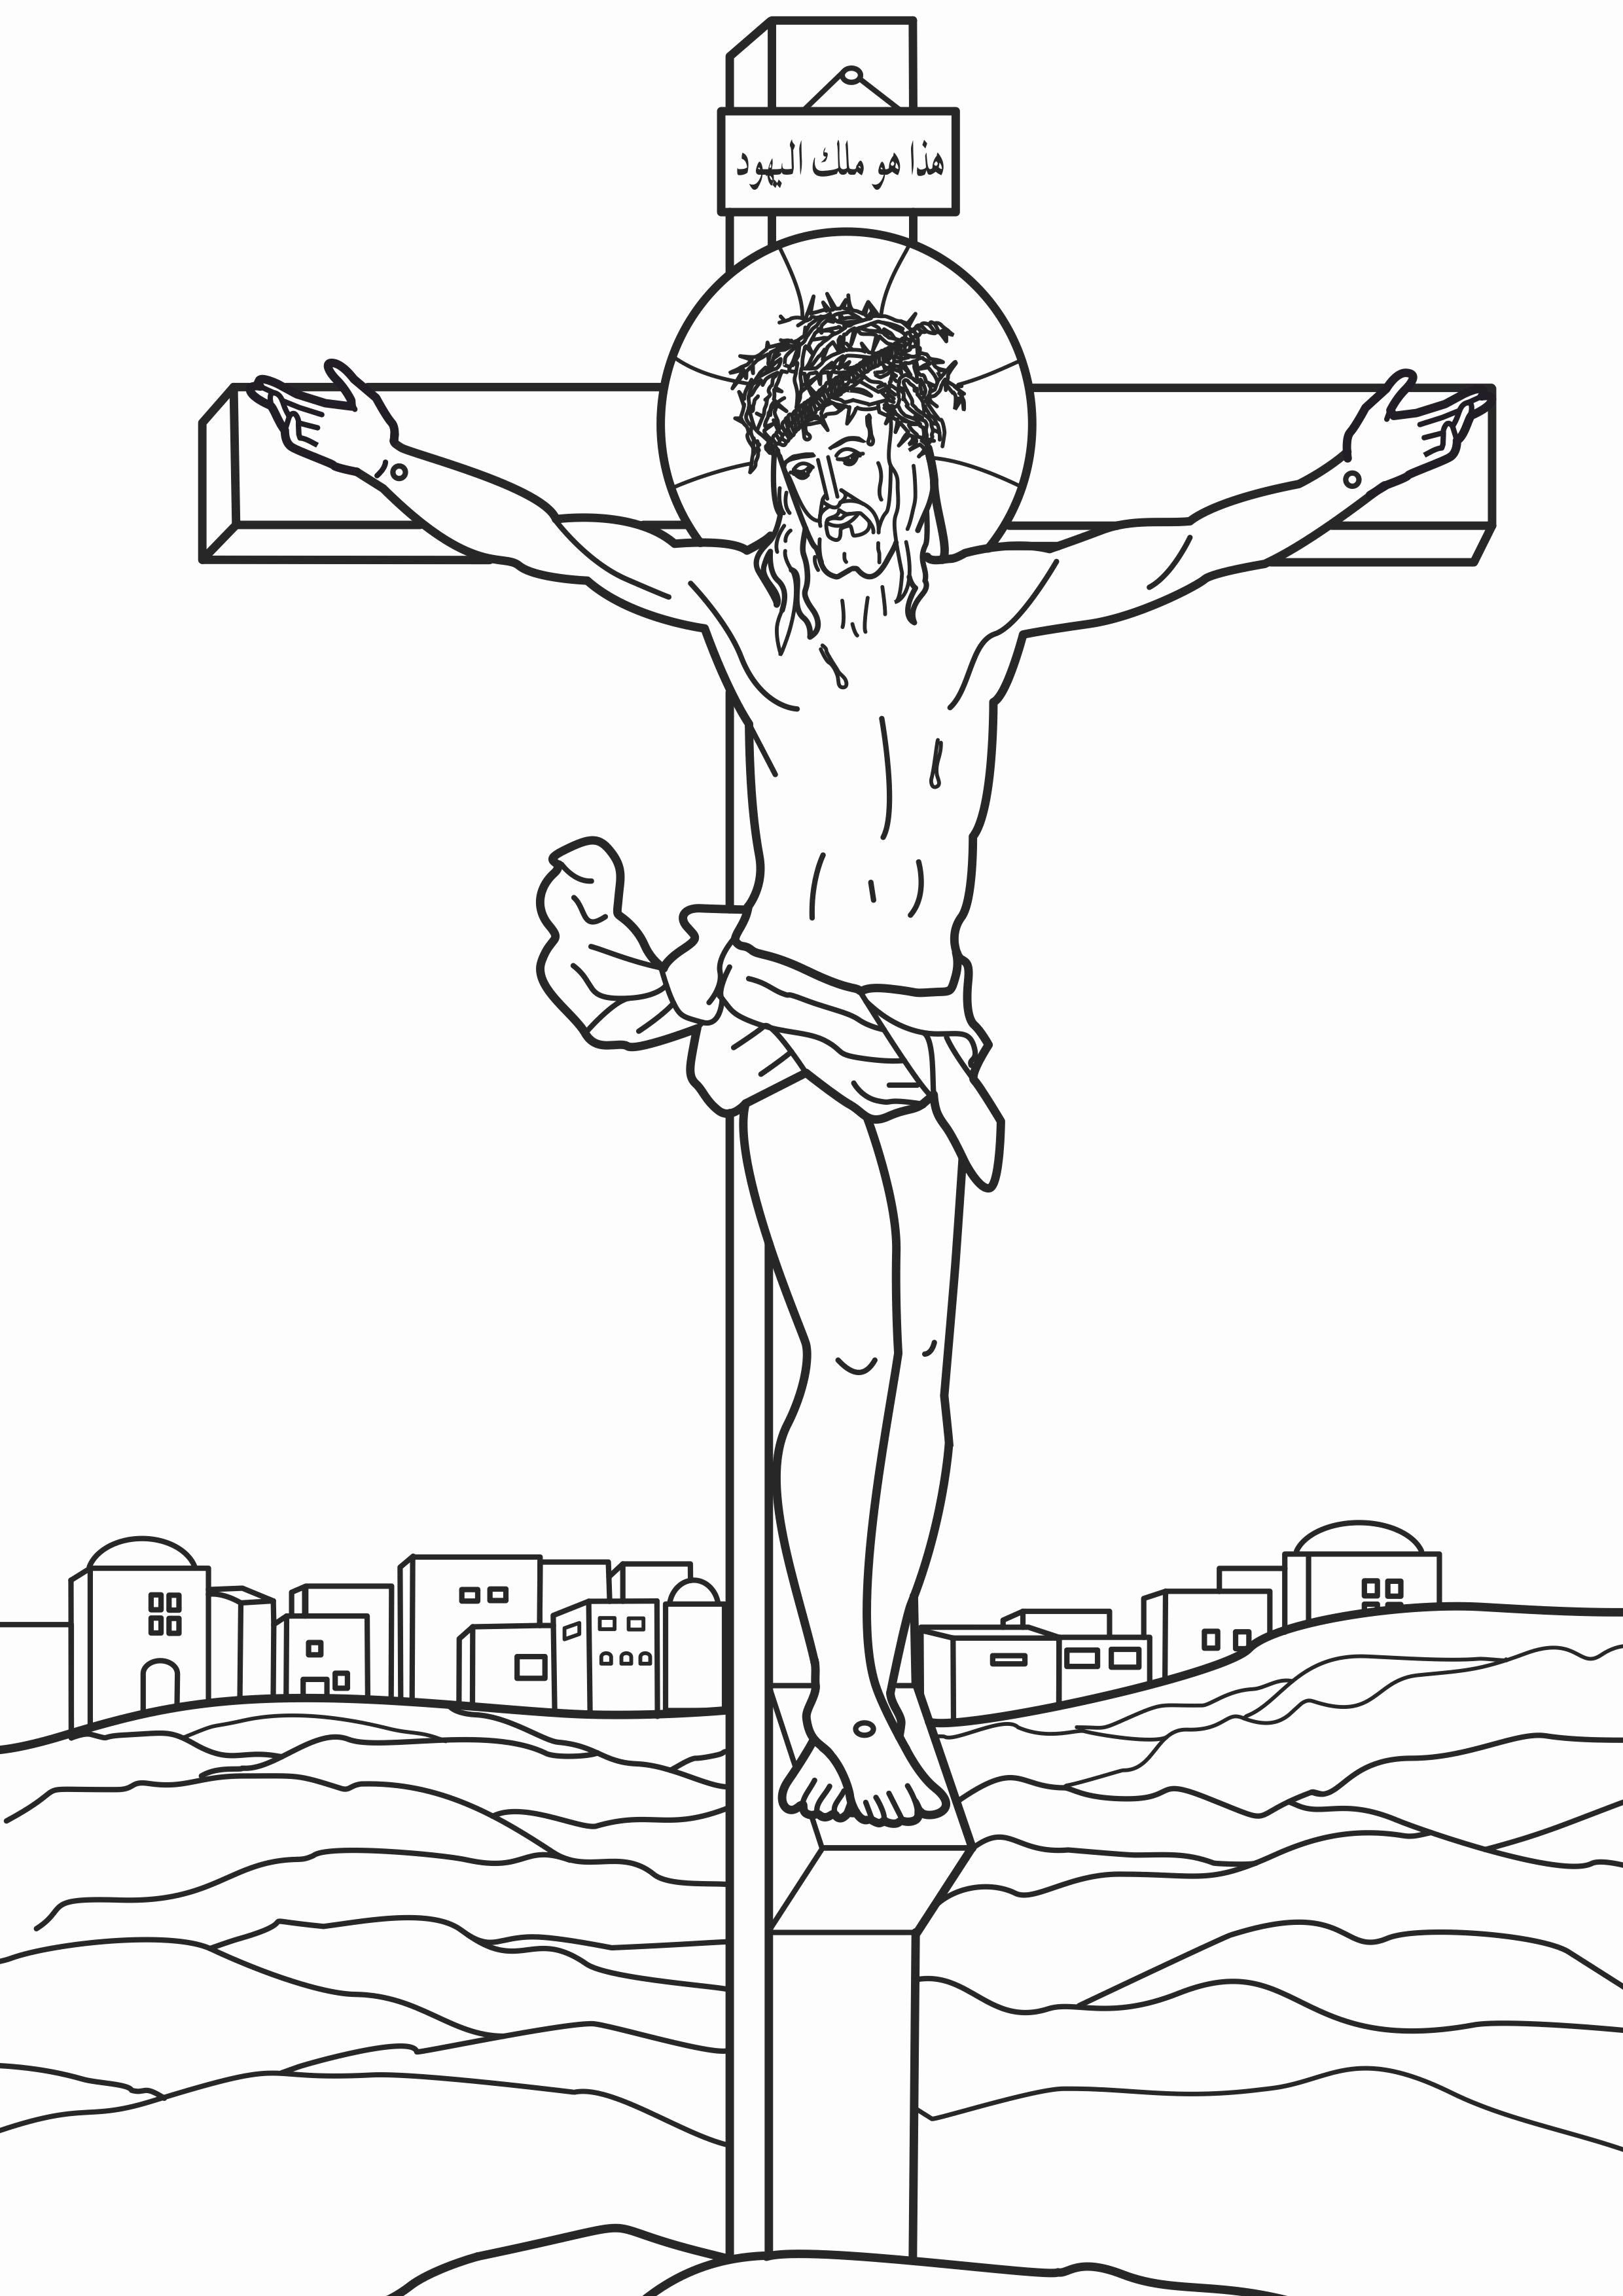 Распятие Иисуса Христа рисунок